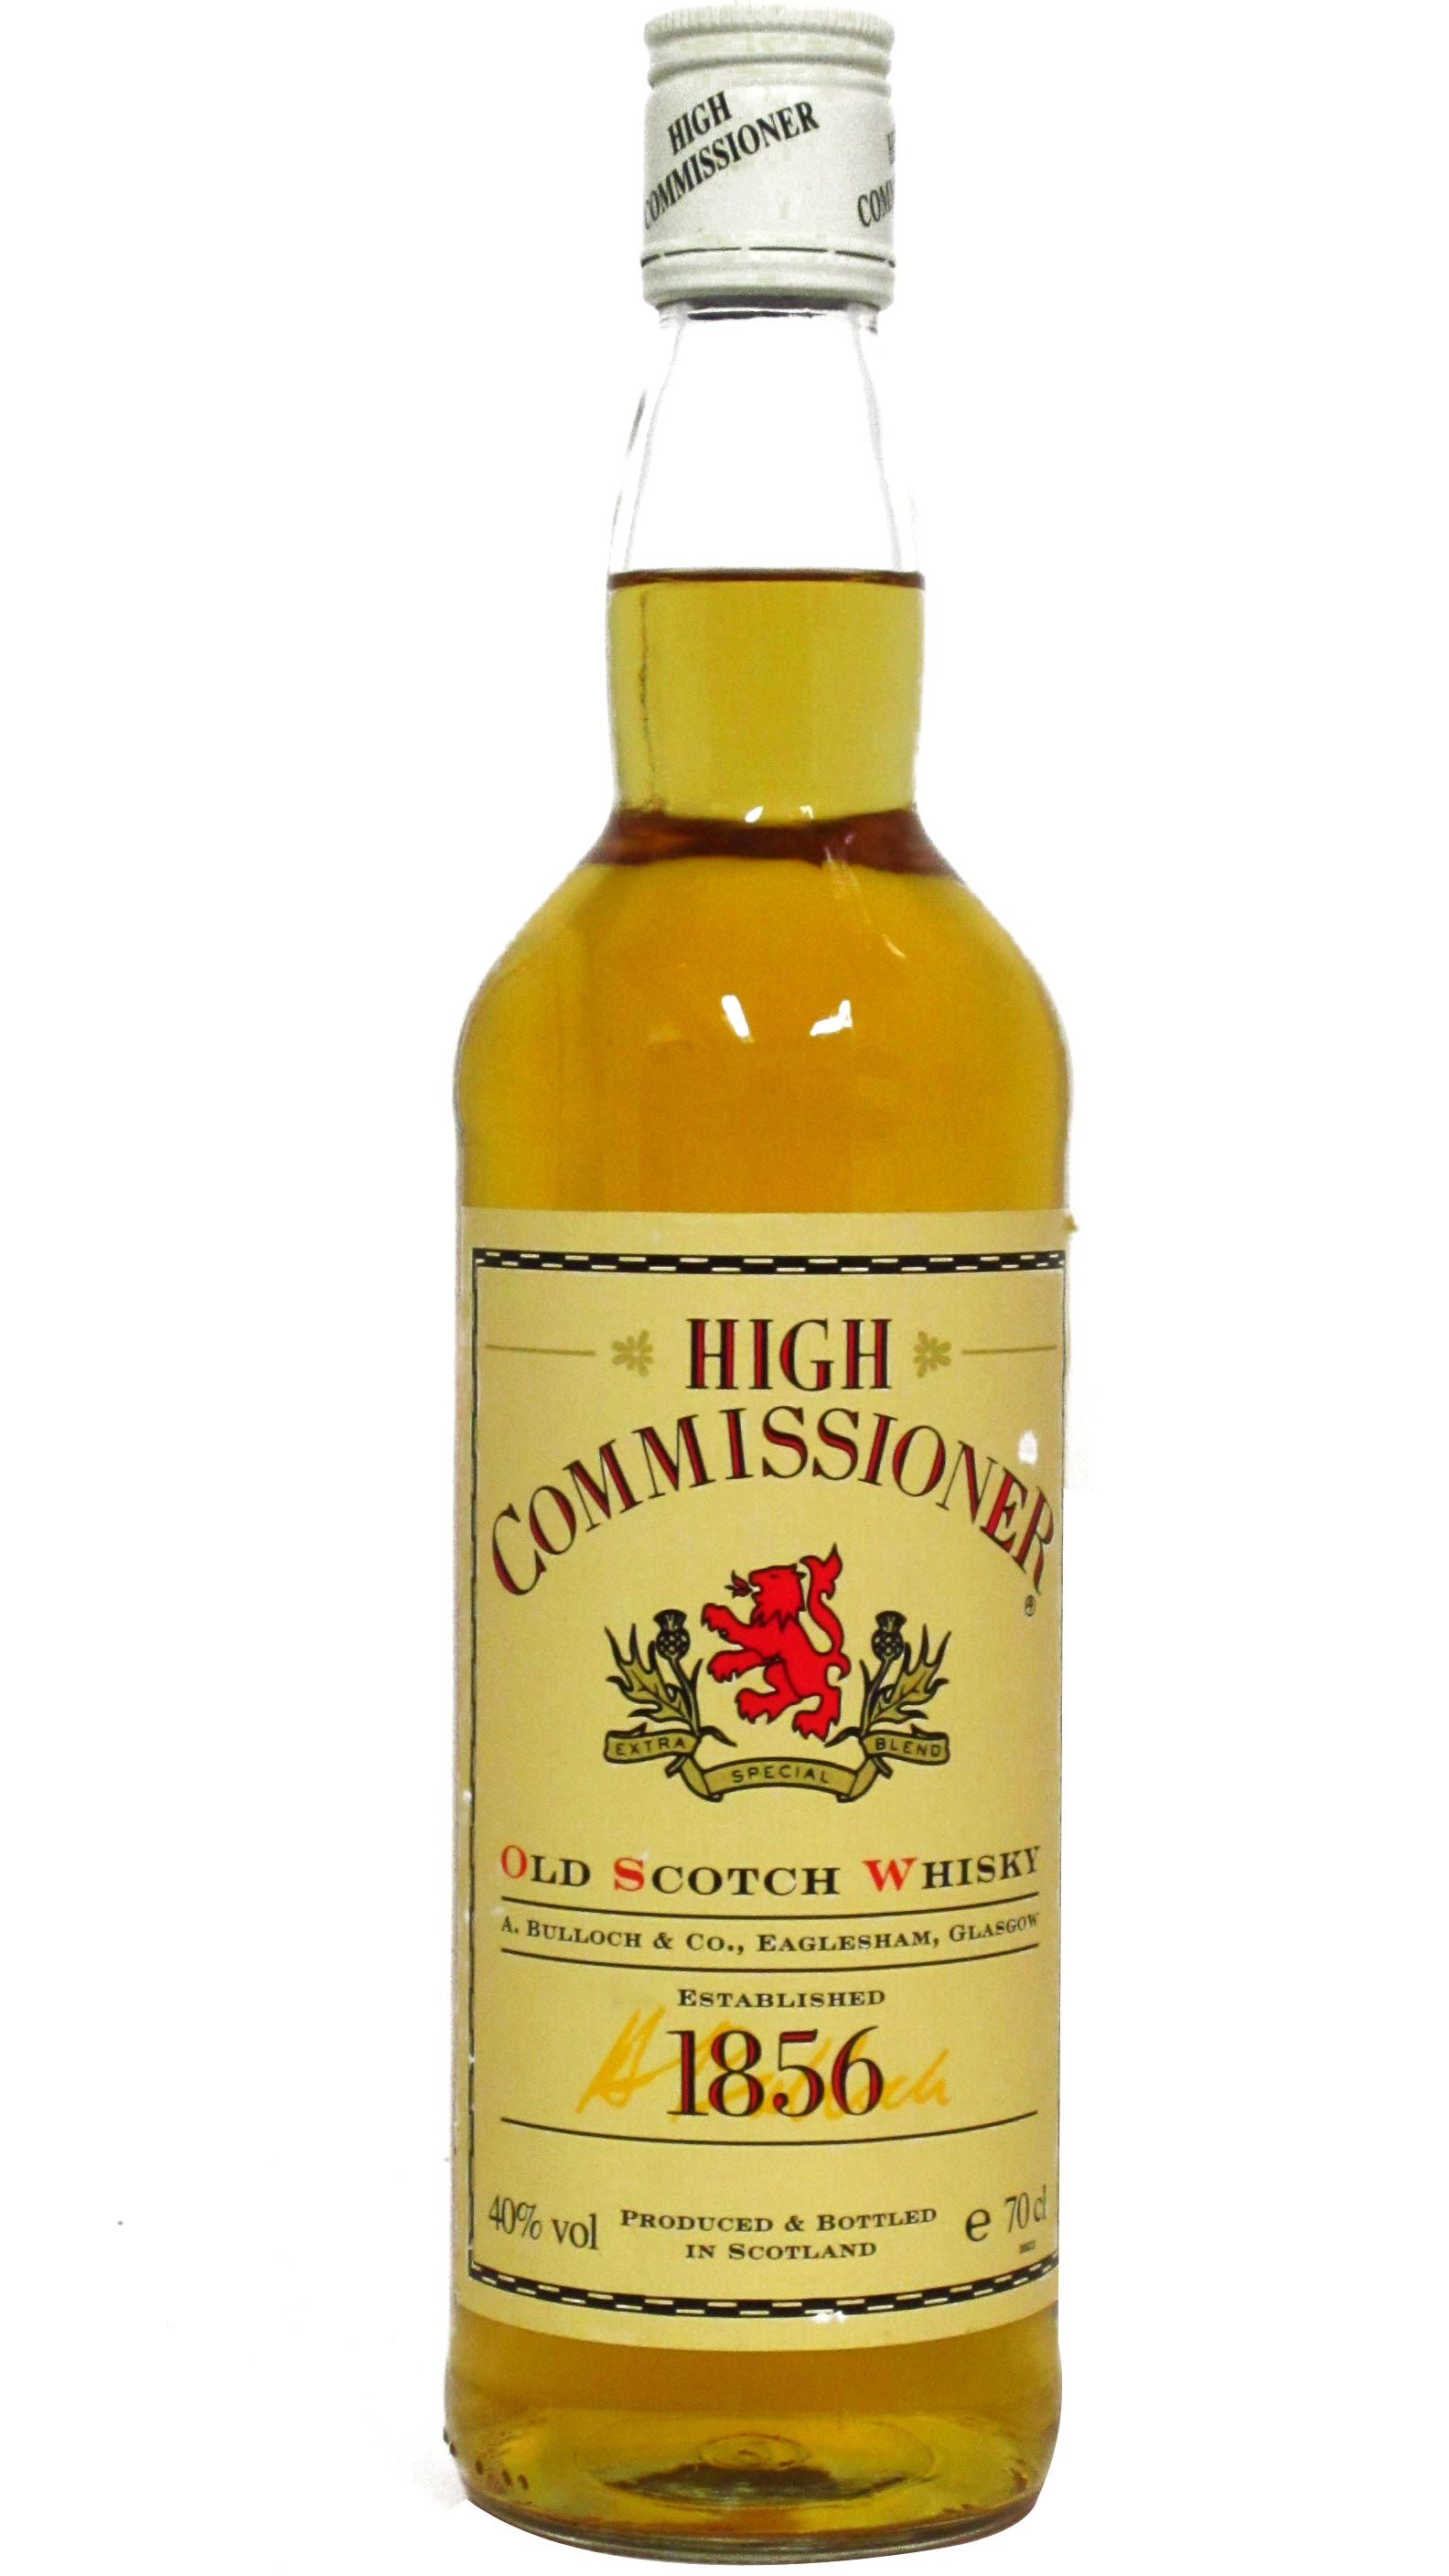 Scotch whisky цена 0.7. Виски Хай Коммишинер. Виски Commissioner 1856. High Commissioner виски. Commissioner Blended Scotch Whisky.